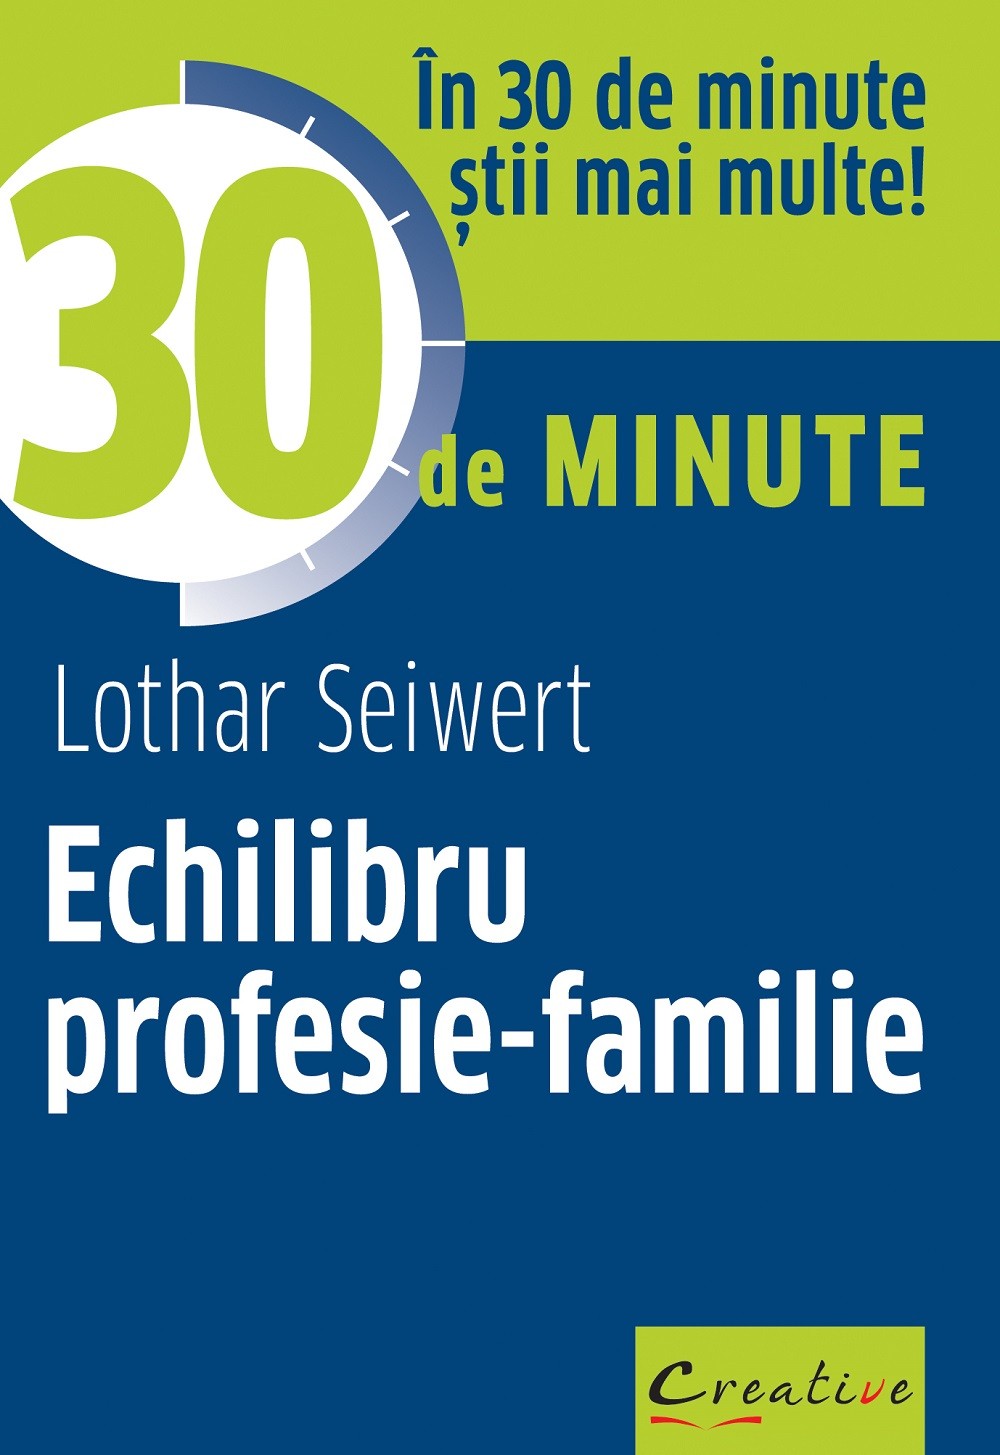 Echilibru profesie-familie | Lothar Seiwert carturesti.ro imagine 2022